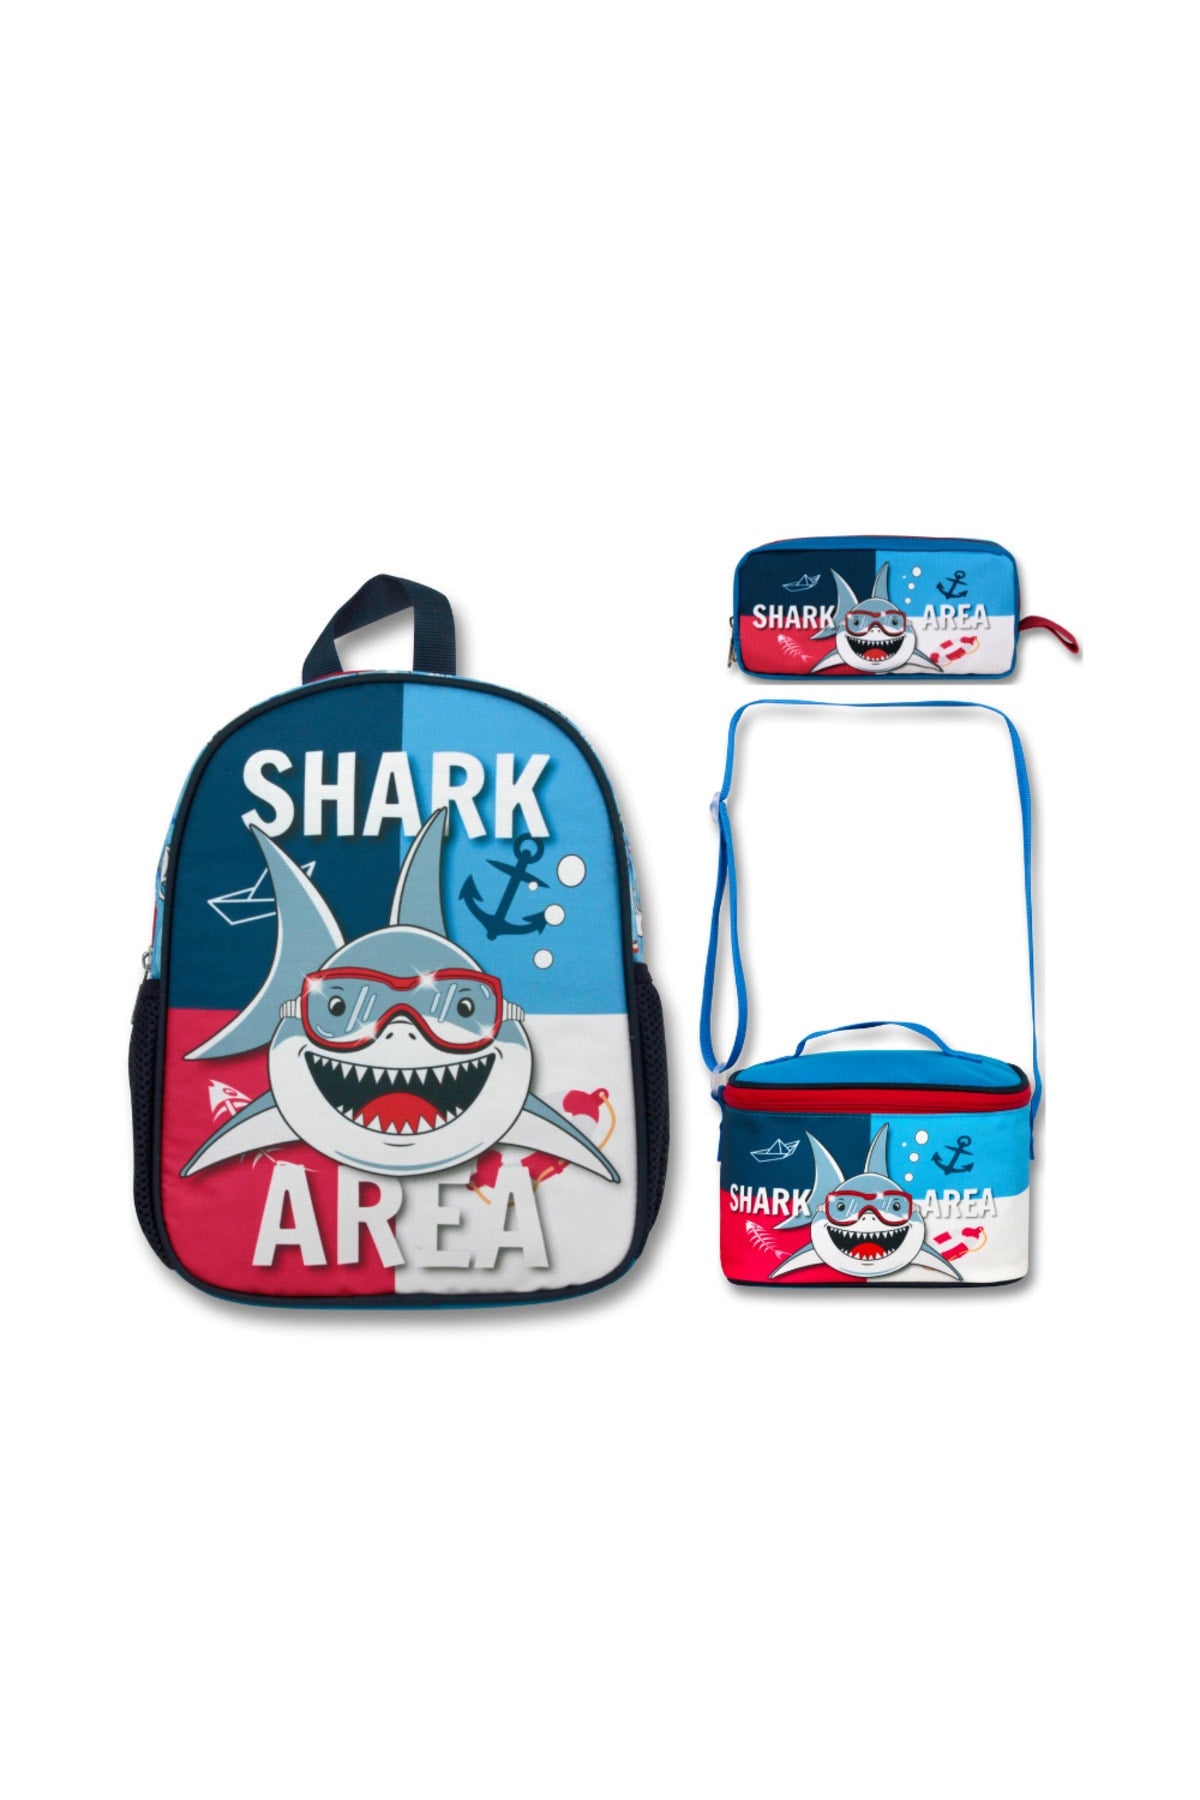 -Umit Bag Shark Kindergarten Bag Lunch & Pencil Bag Set